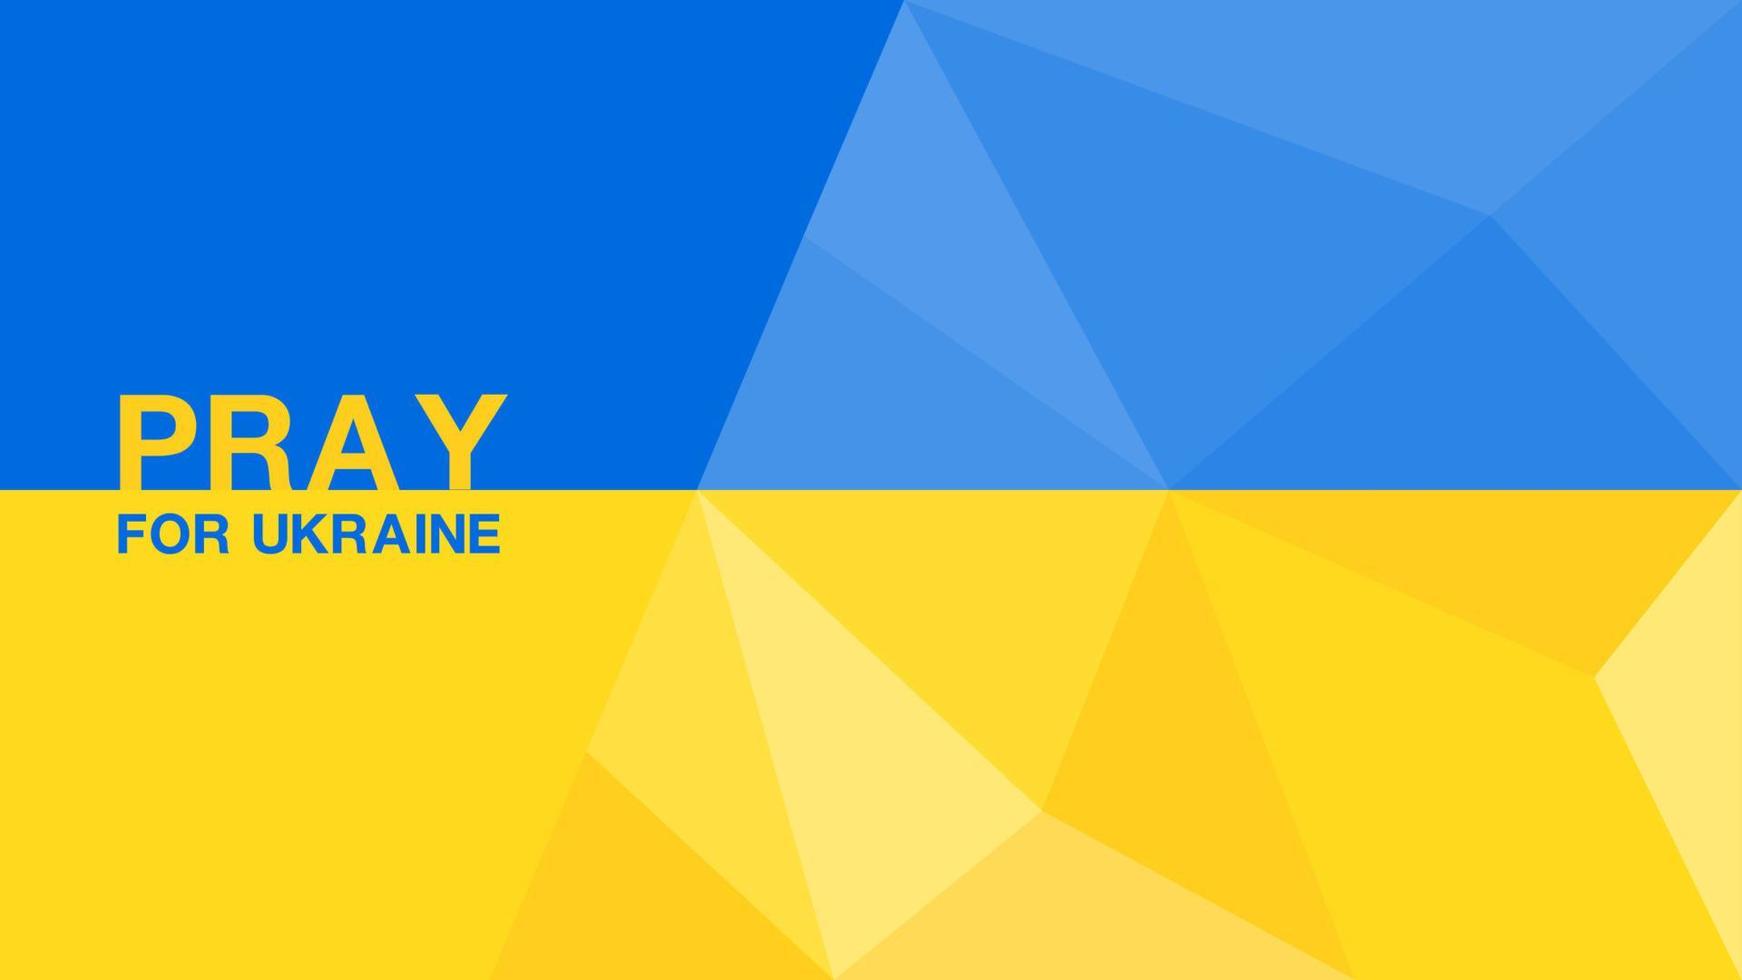 oren por ucrania en el fondo del polígono de la bandera, textura del polígono de la bandera de ucrania, no hay guerra en el concepto de ucrania, diseño de folletos, pancarta azul y amarilla, ilustración vectorial vector